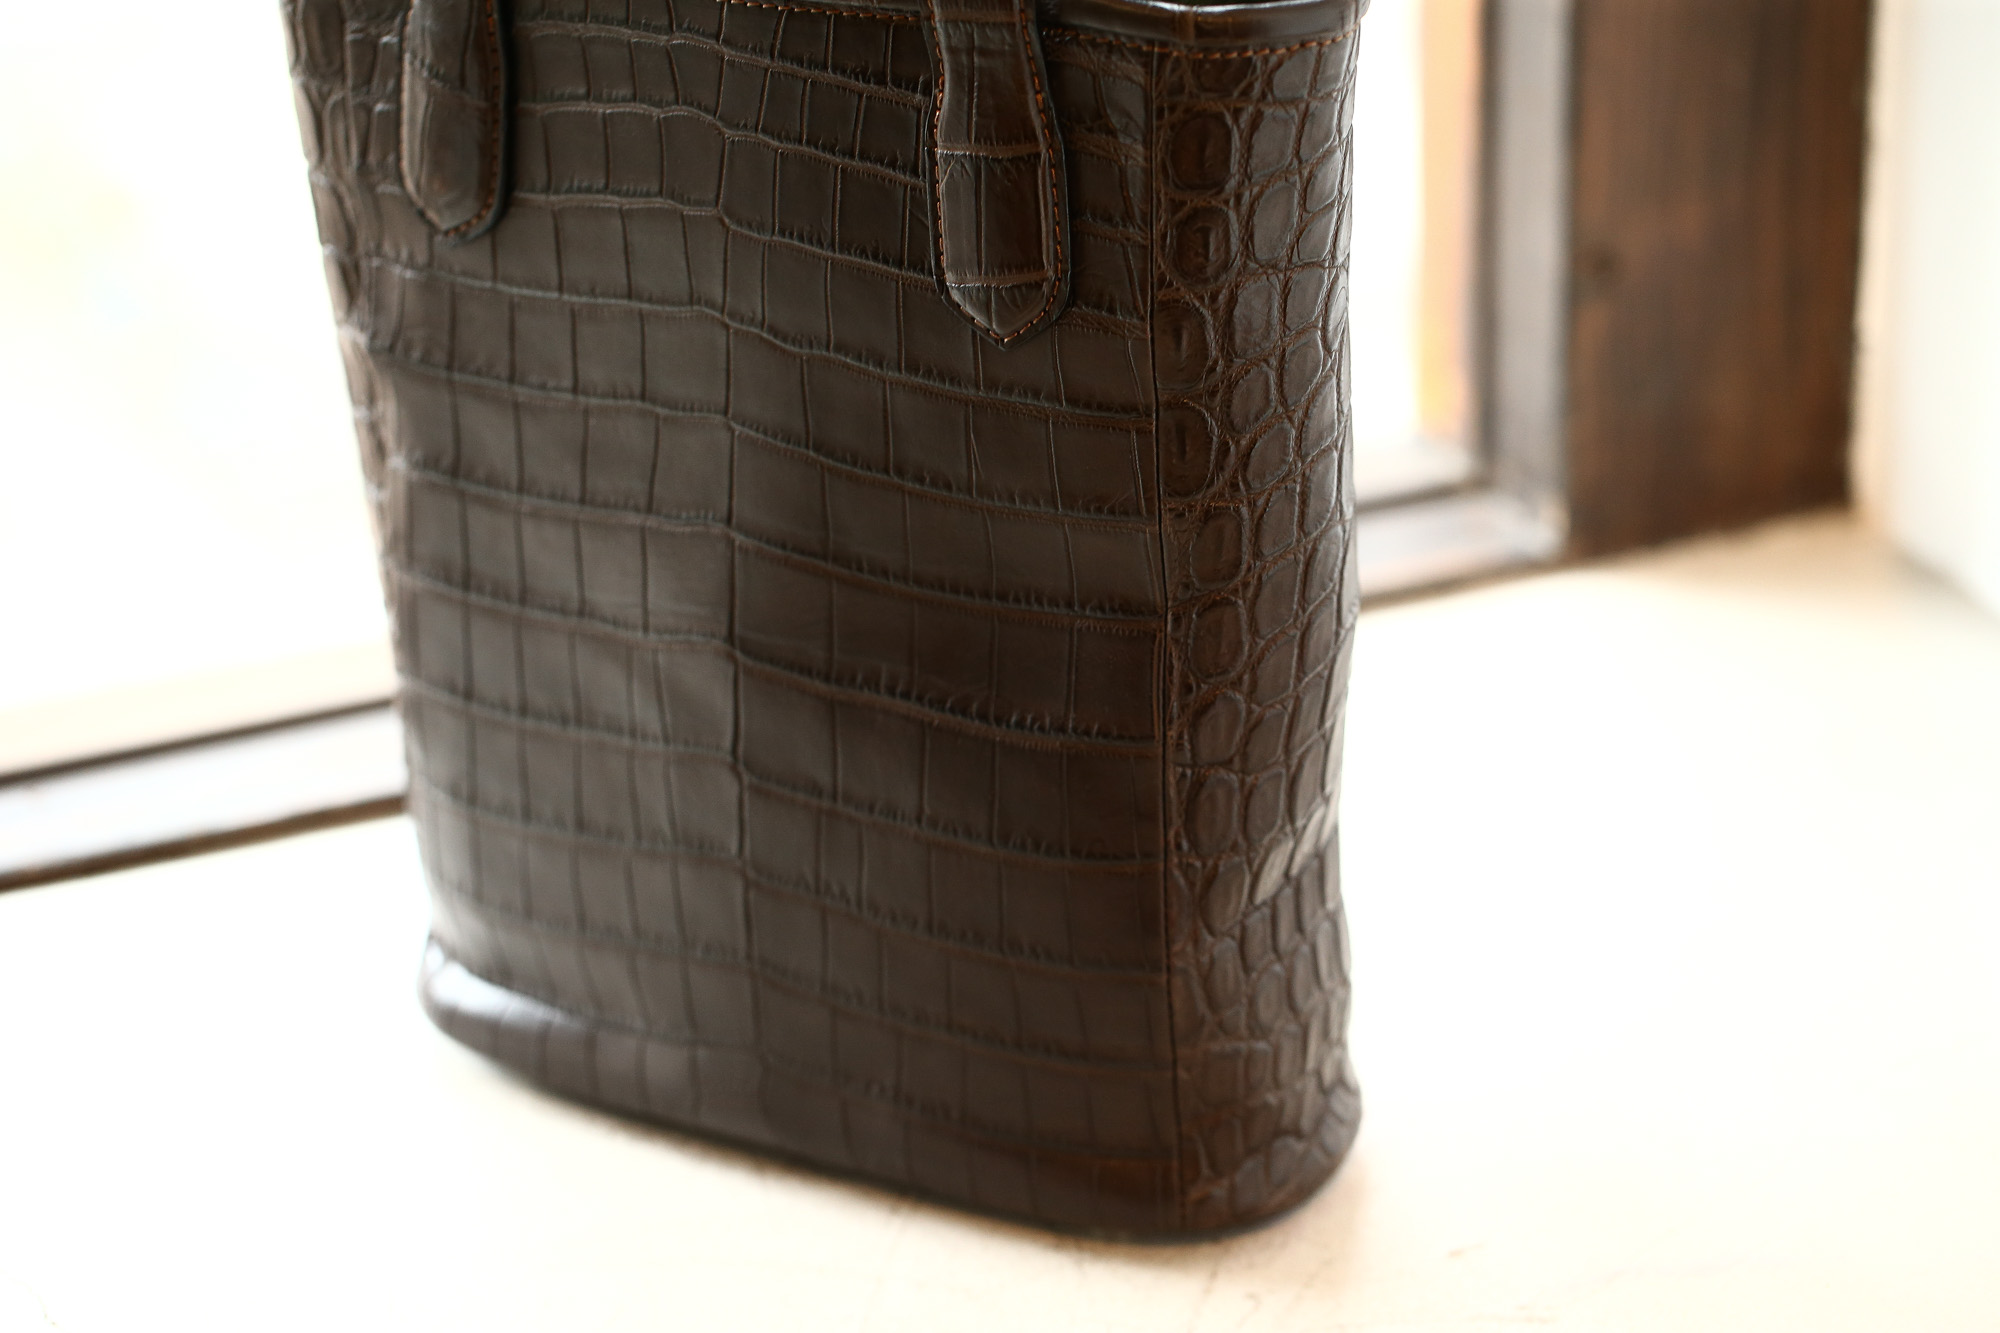 Cisei × 山本製鞄 (シセイ × 山本製鞄) Crocodile Tote Bag Small (クロコダイル トートバッグ スモール) Nile Crocodile Leather (ワニ革) ナイル クロコダイル トート バッグ BLACK(ブラック),NAVY(ネイビー),BROWN(ブラウン) Made in Japan (日本製)   cisei yamamotoseiho トートバック クロコ 愛知 名古屋 Alto e Diritto アルト エ デリット